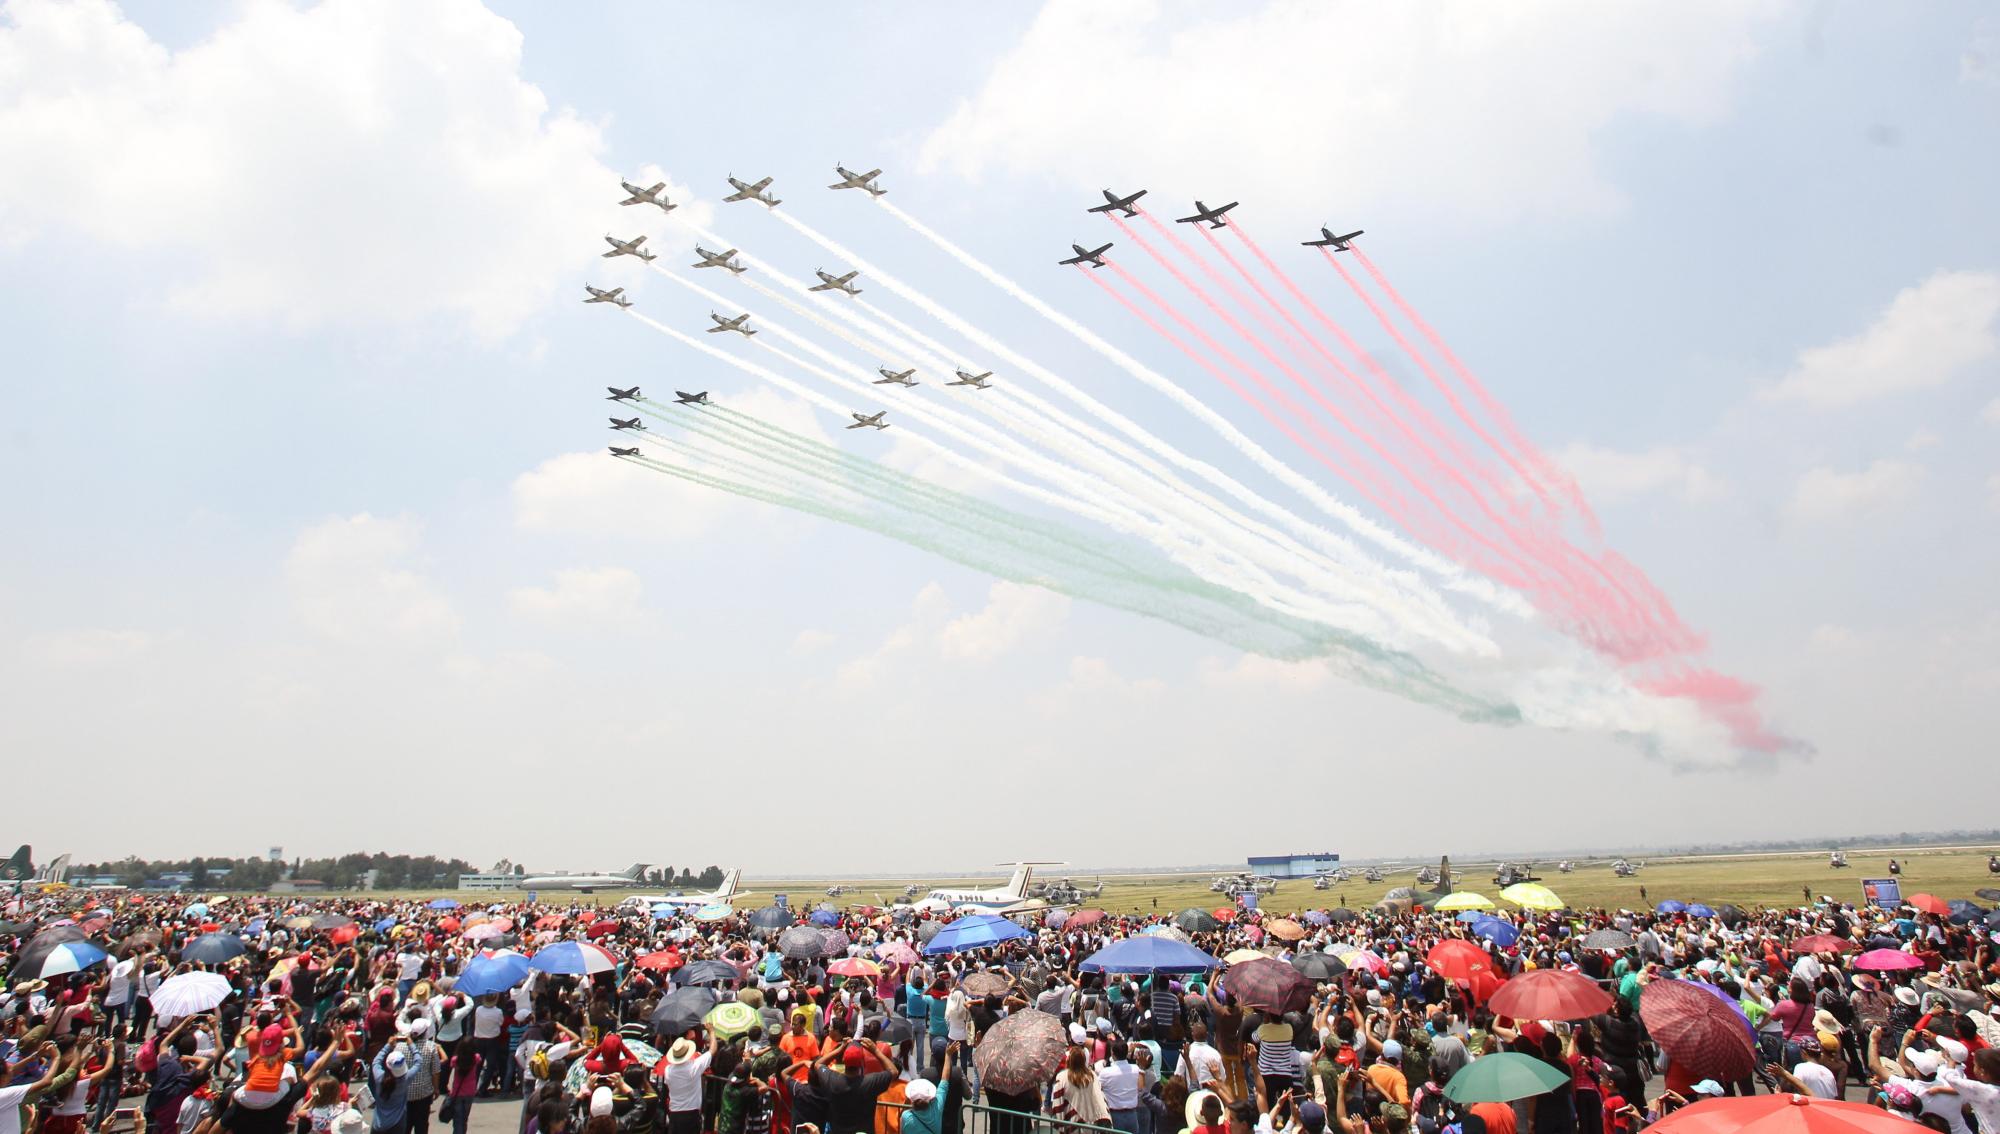 Vista general de la Feria Aeroespacial México 2015 en el campo militar de Santa Lucía en Ciudad de México en el marco de las festividades de conmemoración del aniversario de los 100 años de la Fuerza Aérea Mexicana. 